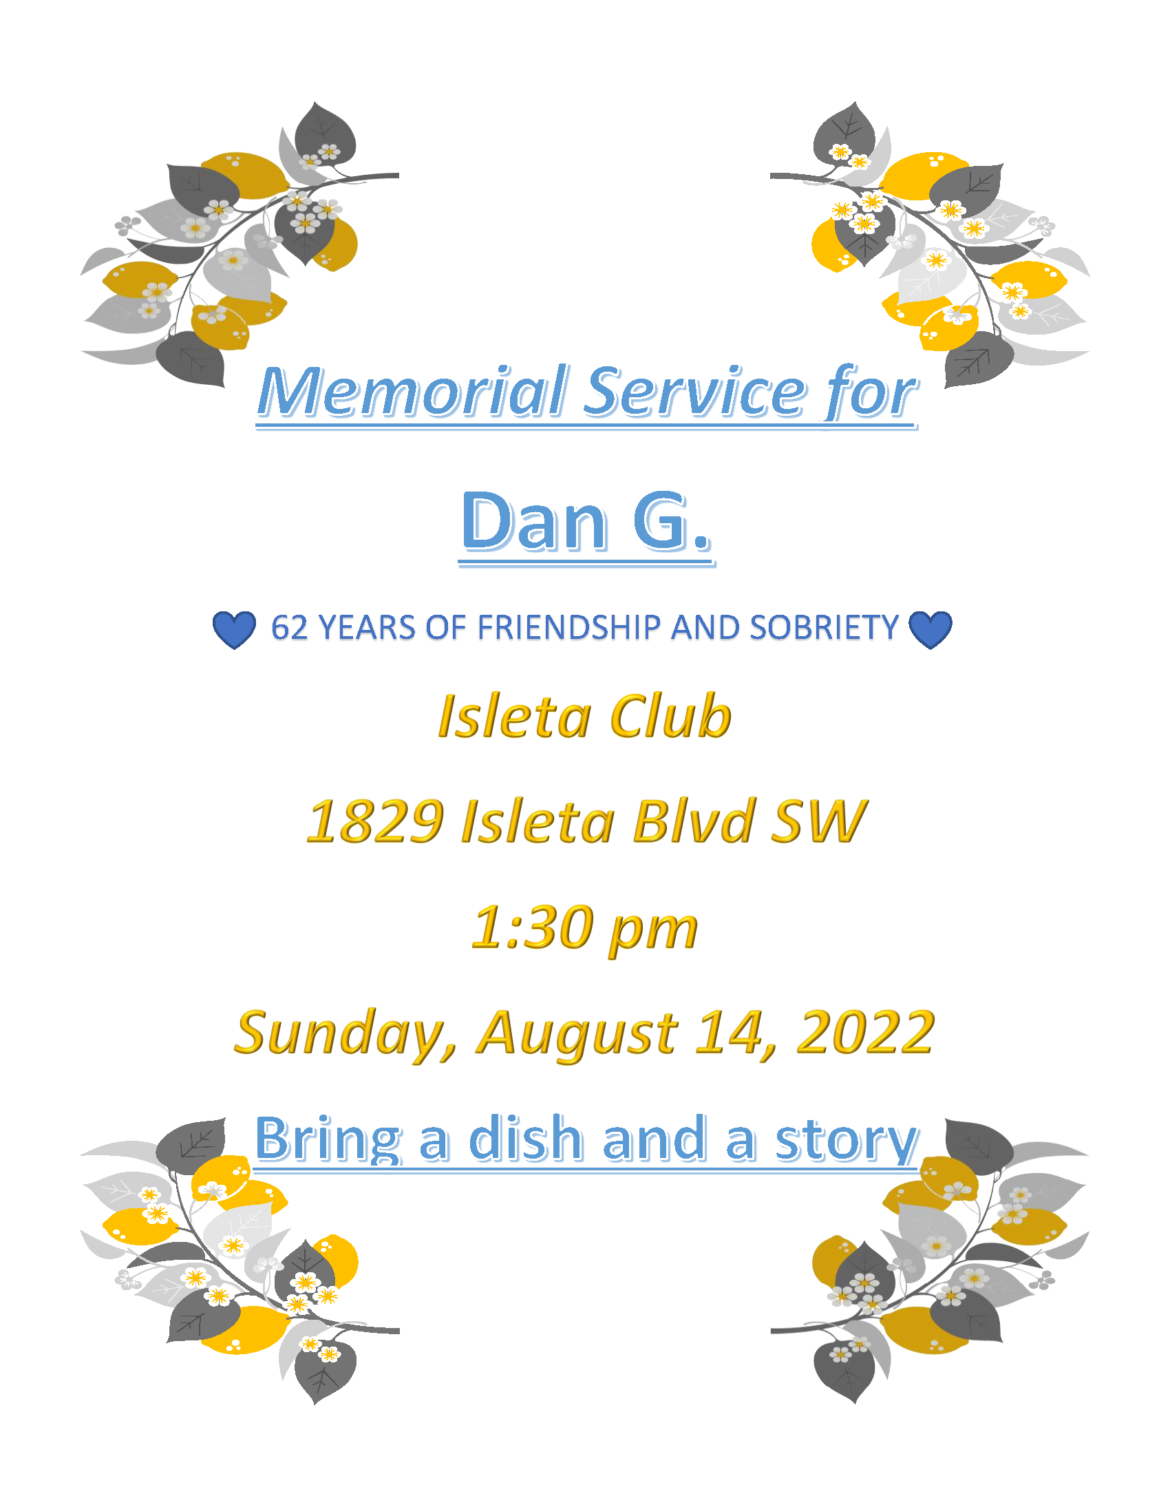 Memorial Service for Dan G.